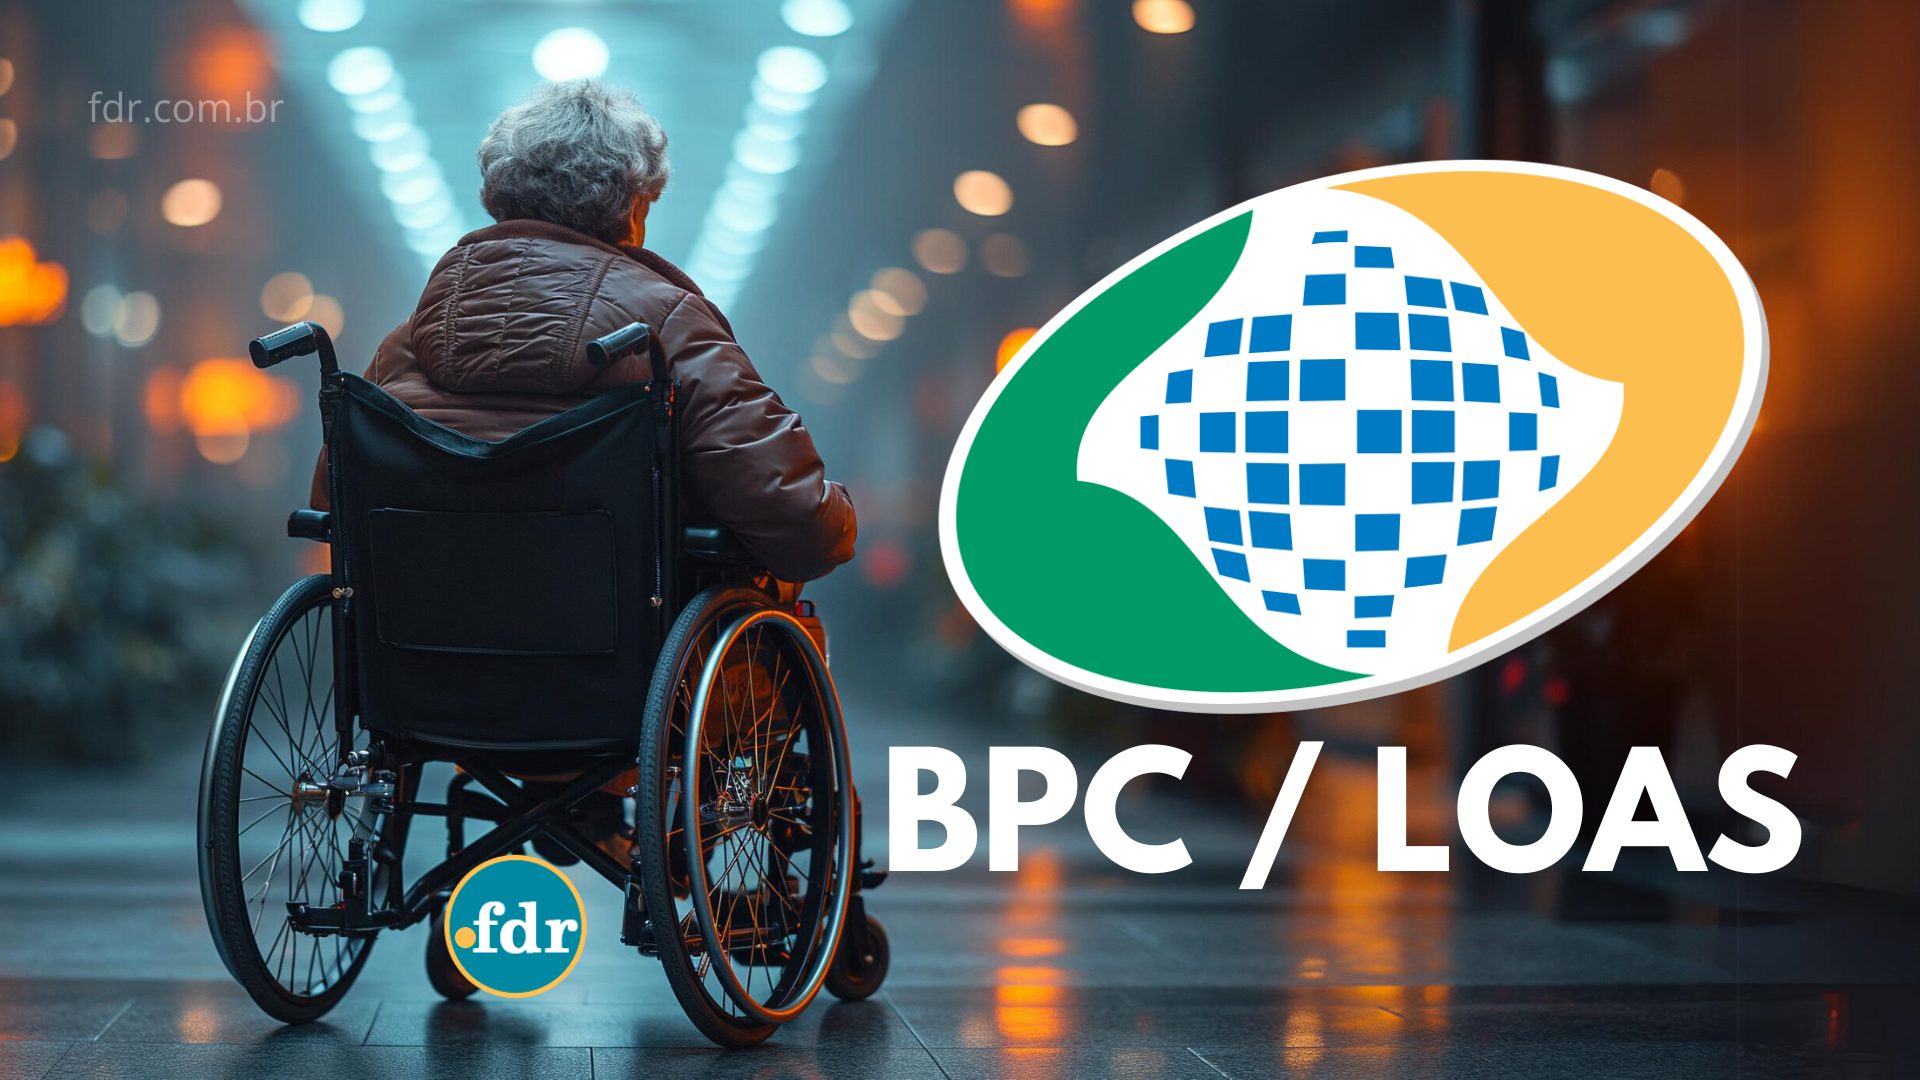 INSS emite ALERTA para idosos e pessoas com deficiência sobre mudanças no BPC